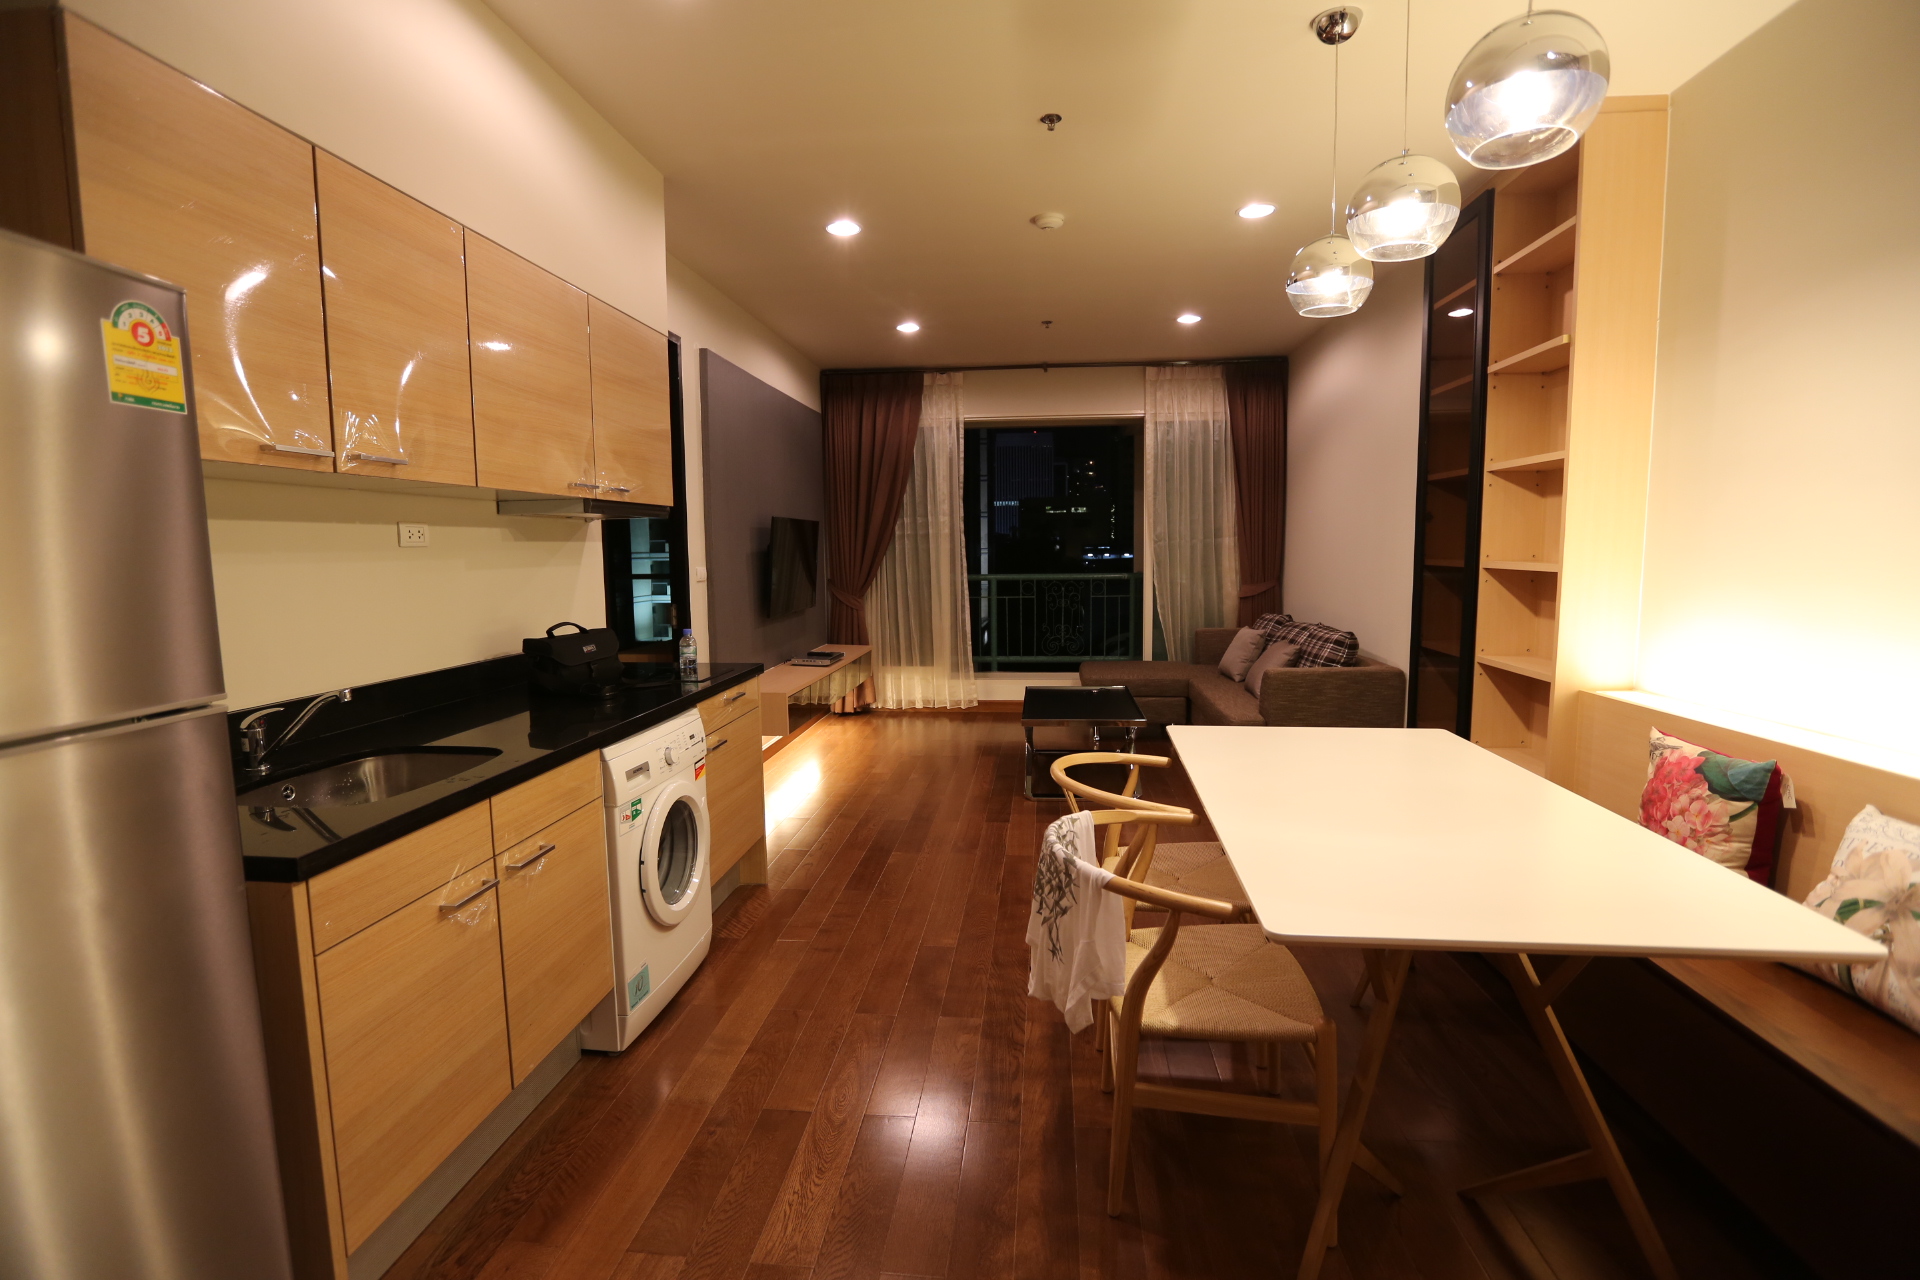 Condominium for rent in Ploenchit